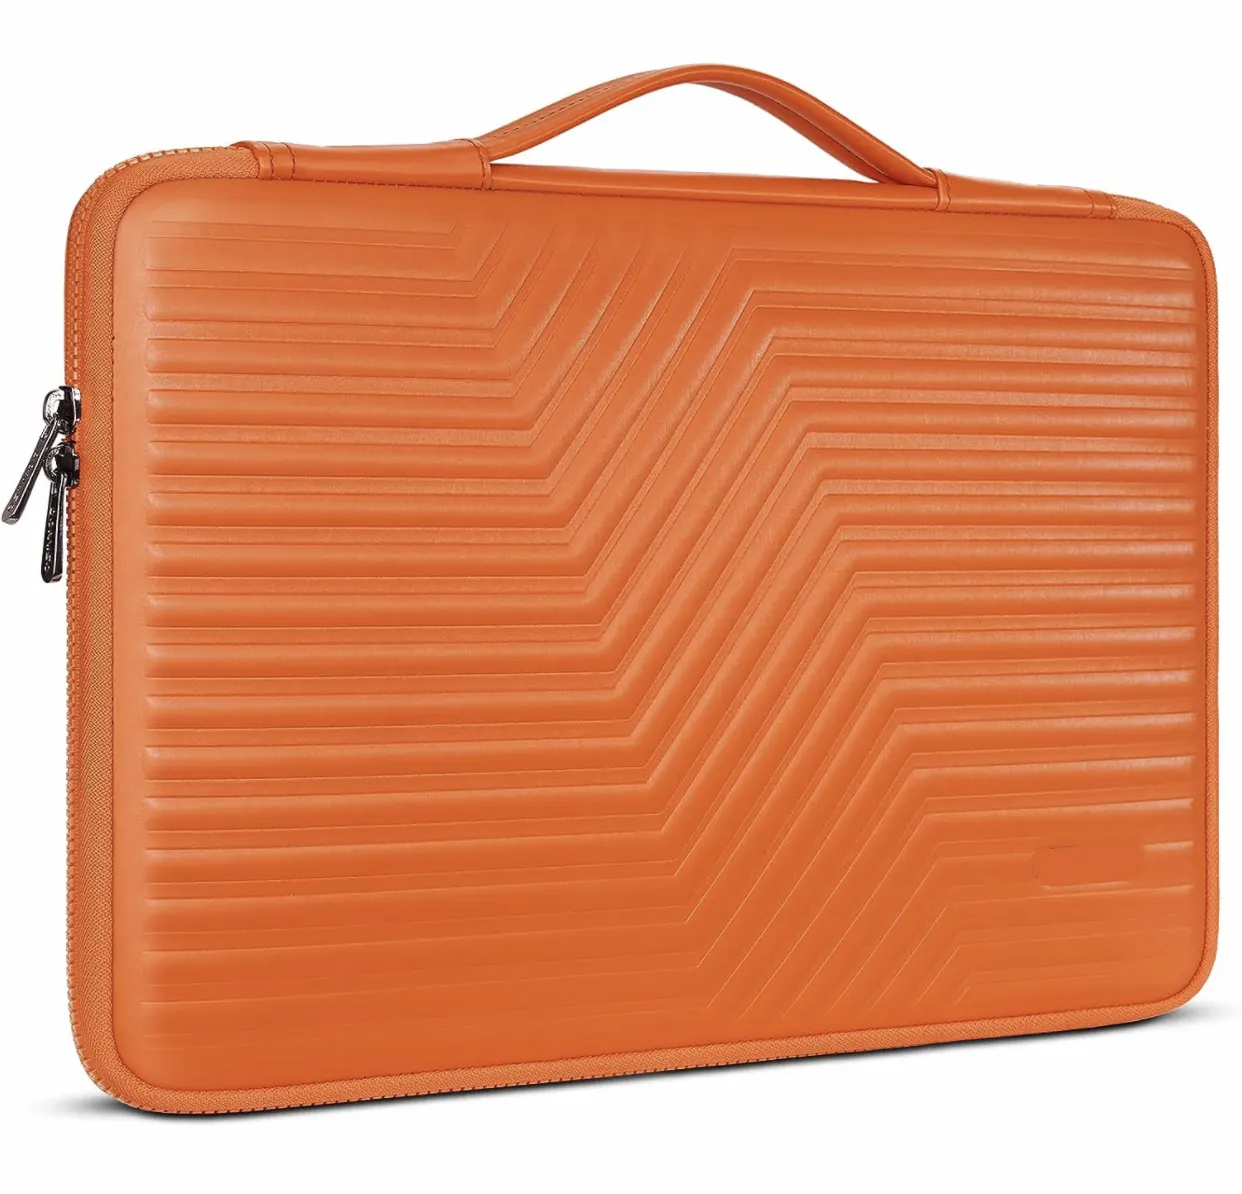 Personalizado portátil impermeável EVA Shell duro viagem Laptop Sleeve Case para MacBook Pro14 polegadas 13.3 Macbook